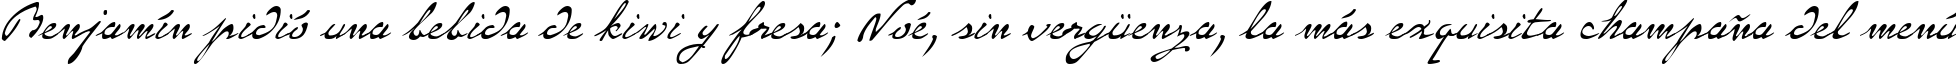 Пример написания шрифтом P22 Monet Regular текста на испанском